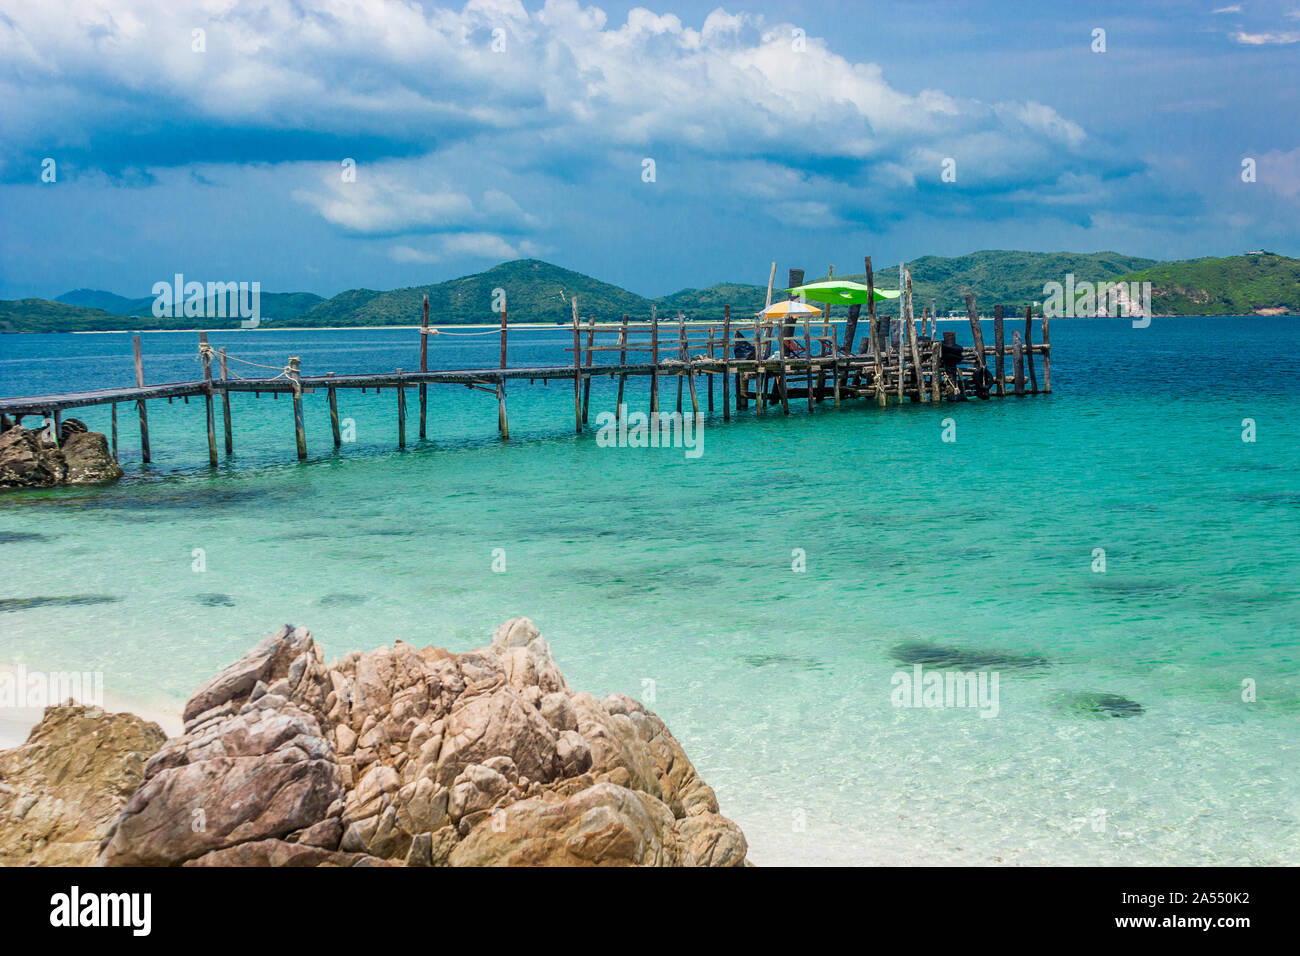 Pont de bois sur la plage avec de l'eau et de ciel bleu. Koh kham Pattaya en Thaïlande. Banque D'Images